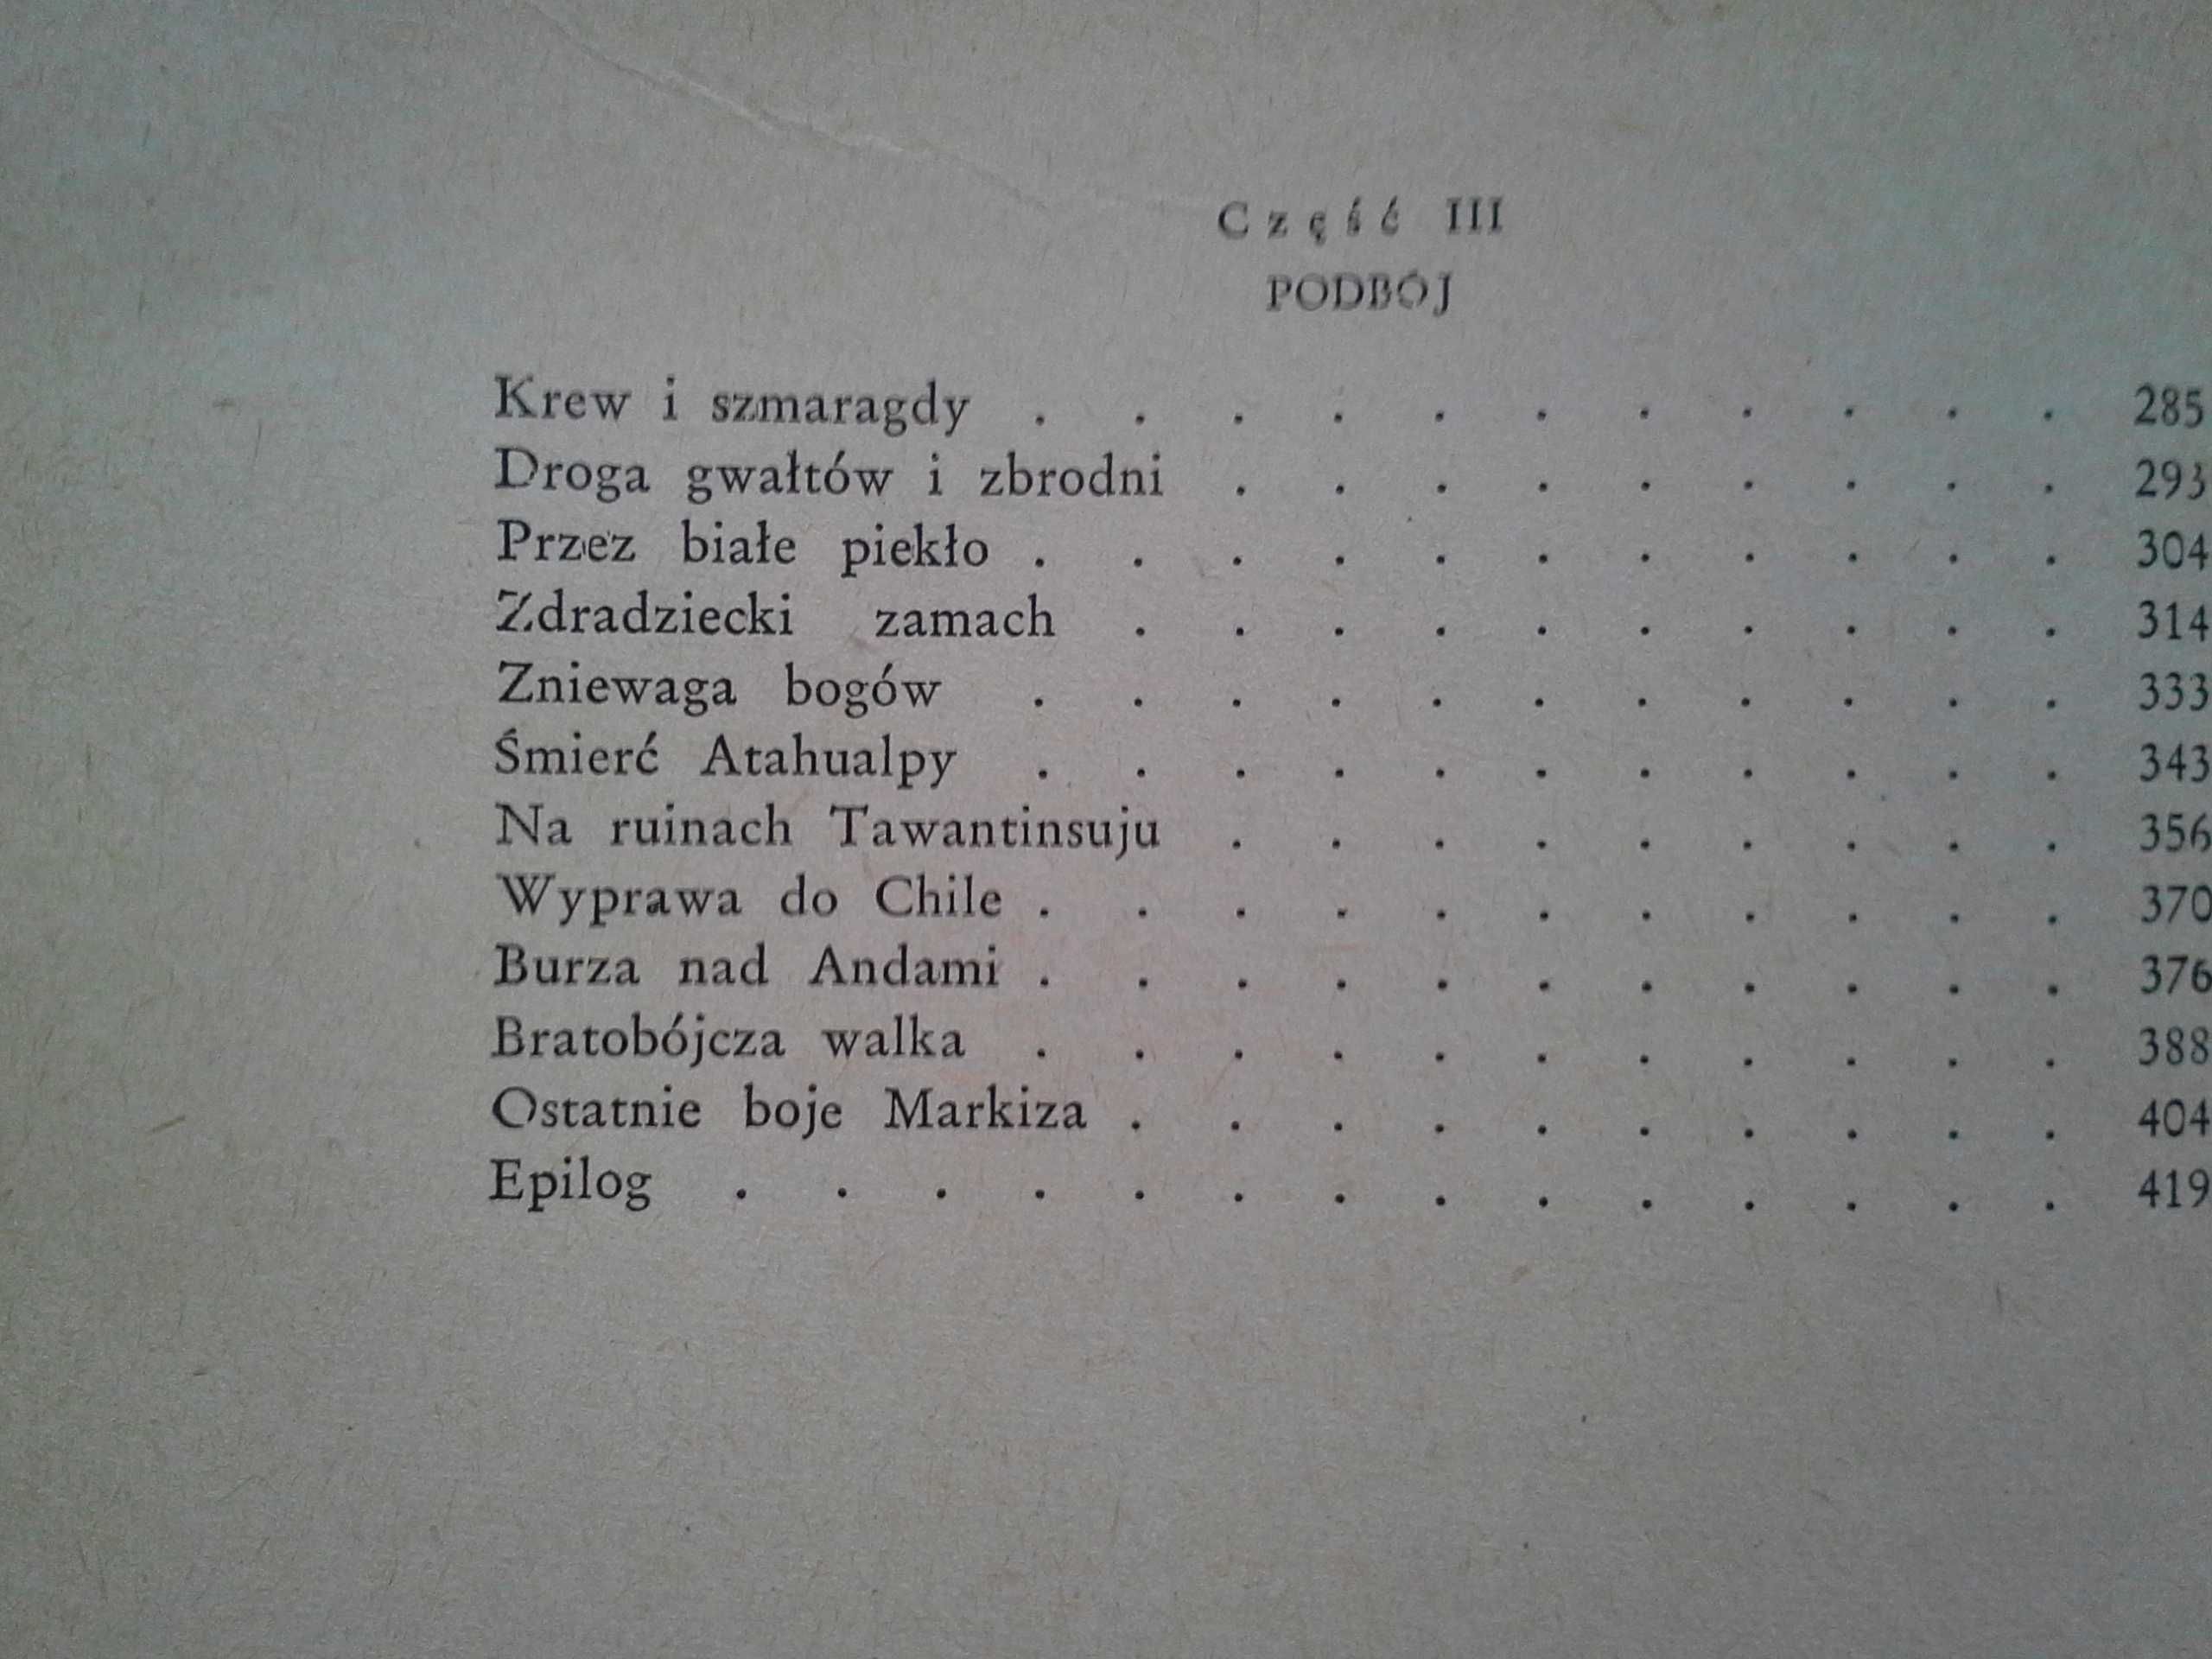 Królestwo Złotych Łez, Zenon Kosidowski, wydanie pierwsze 1960r.